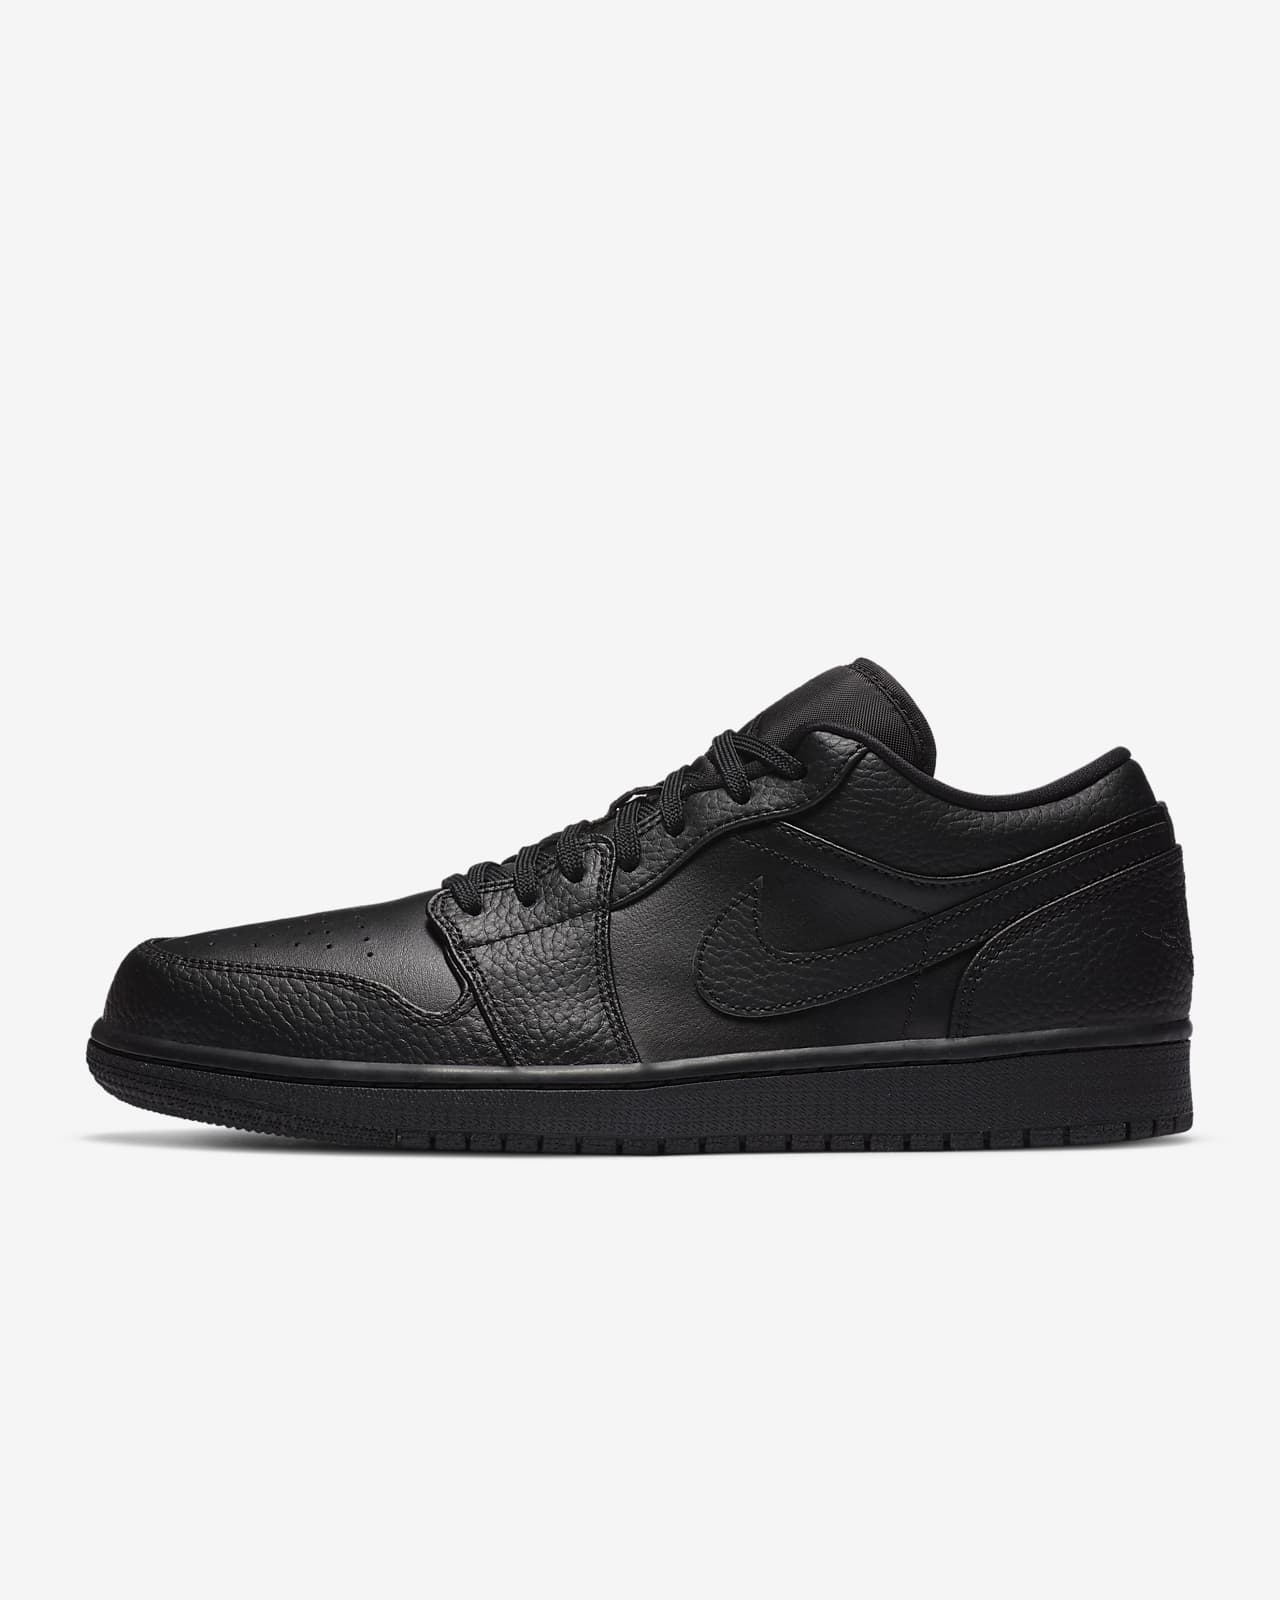 Revolutionary Pollinate Leap Air Jordan 1 Low Men's Shoes. Nike CA